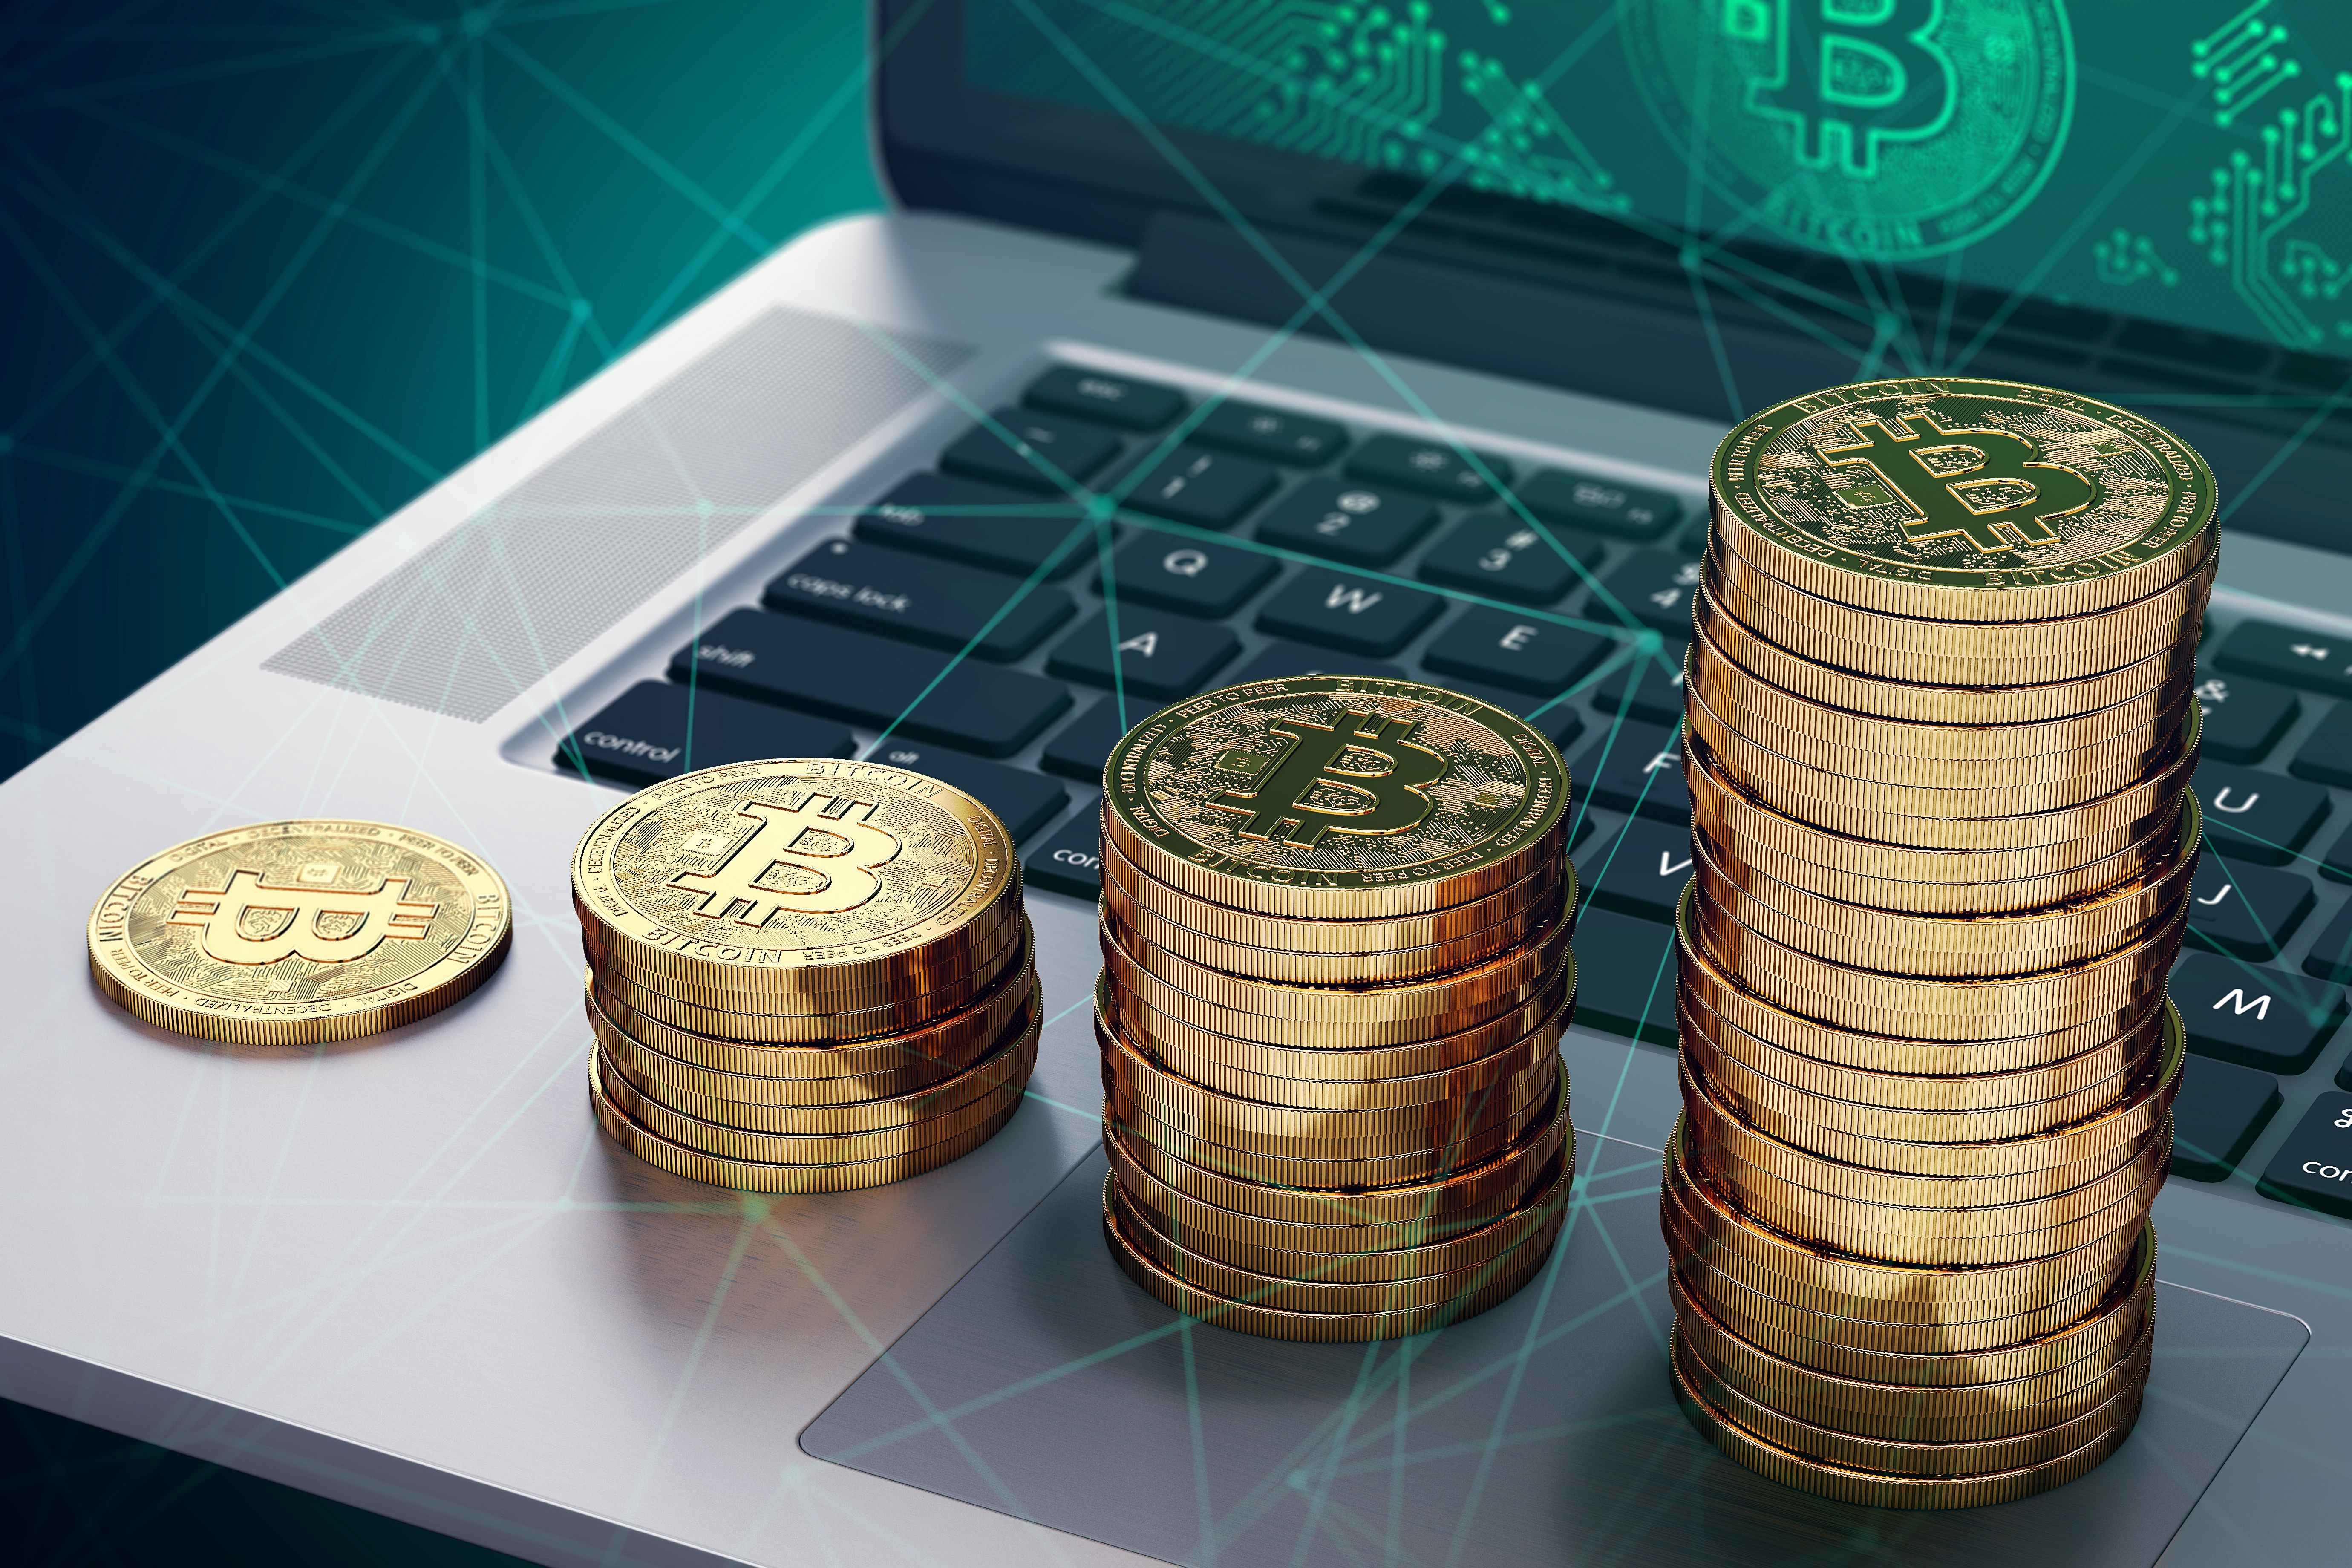 Bitcoin Cash: De ce criptomoneda rivală a cauzat scăderea prețului bitcoin